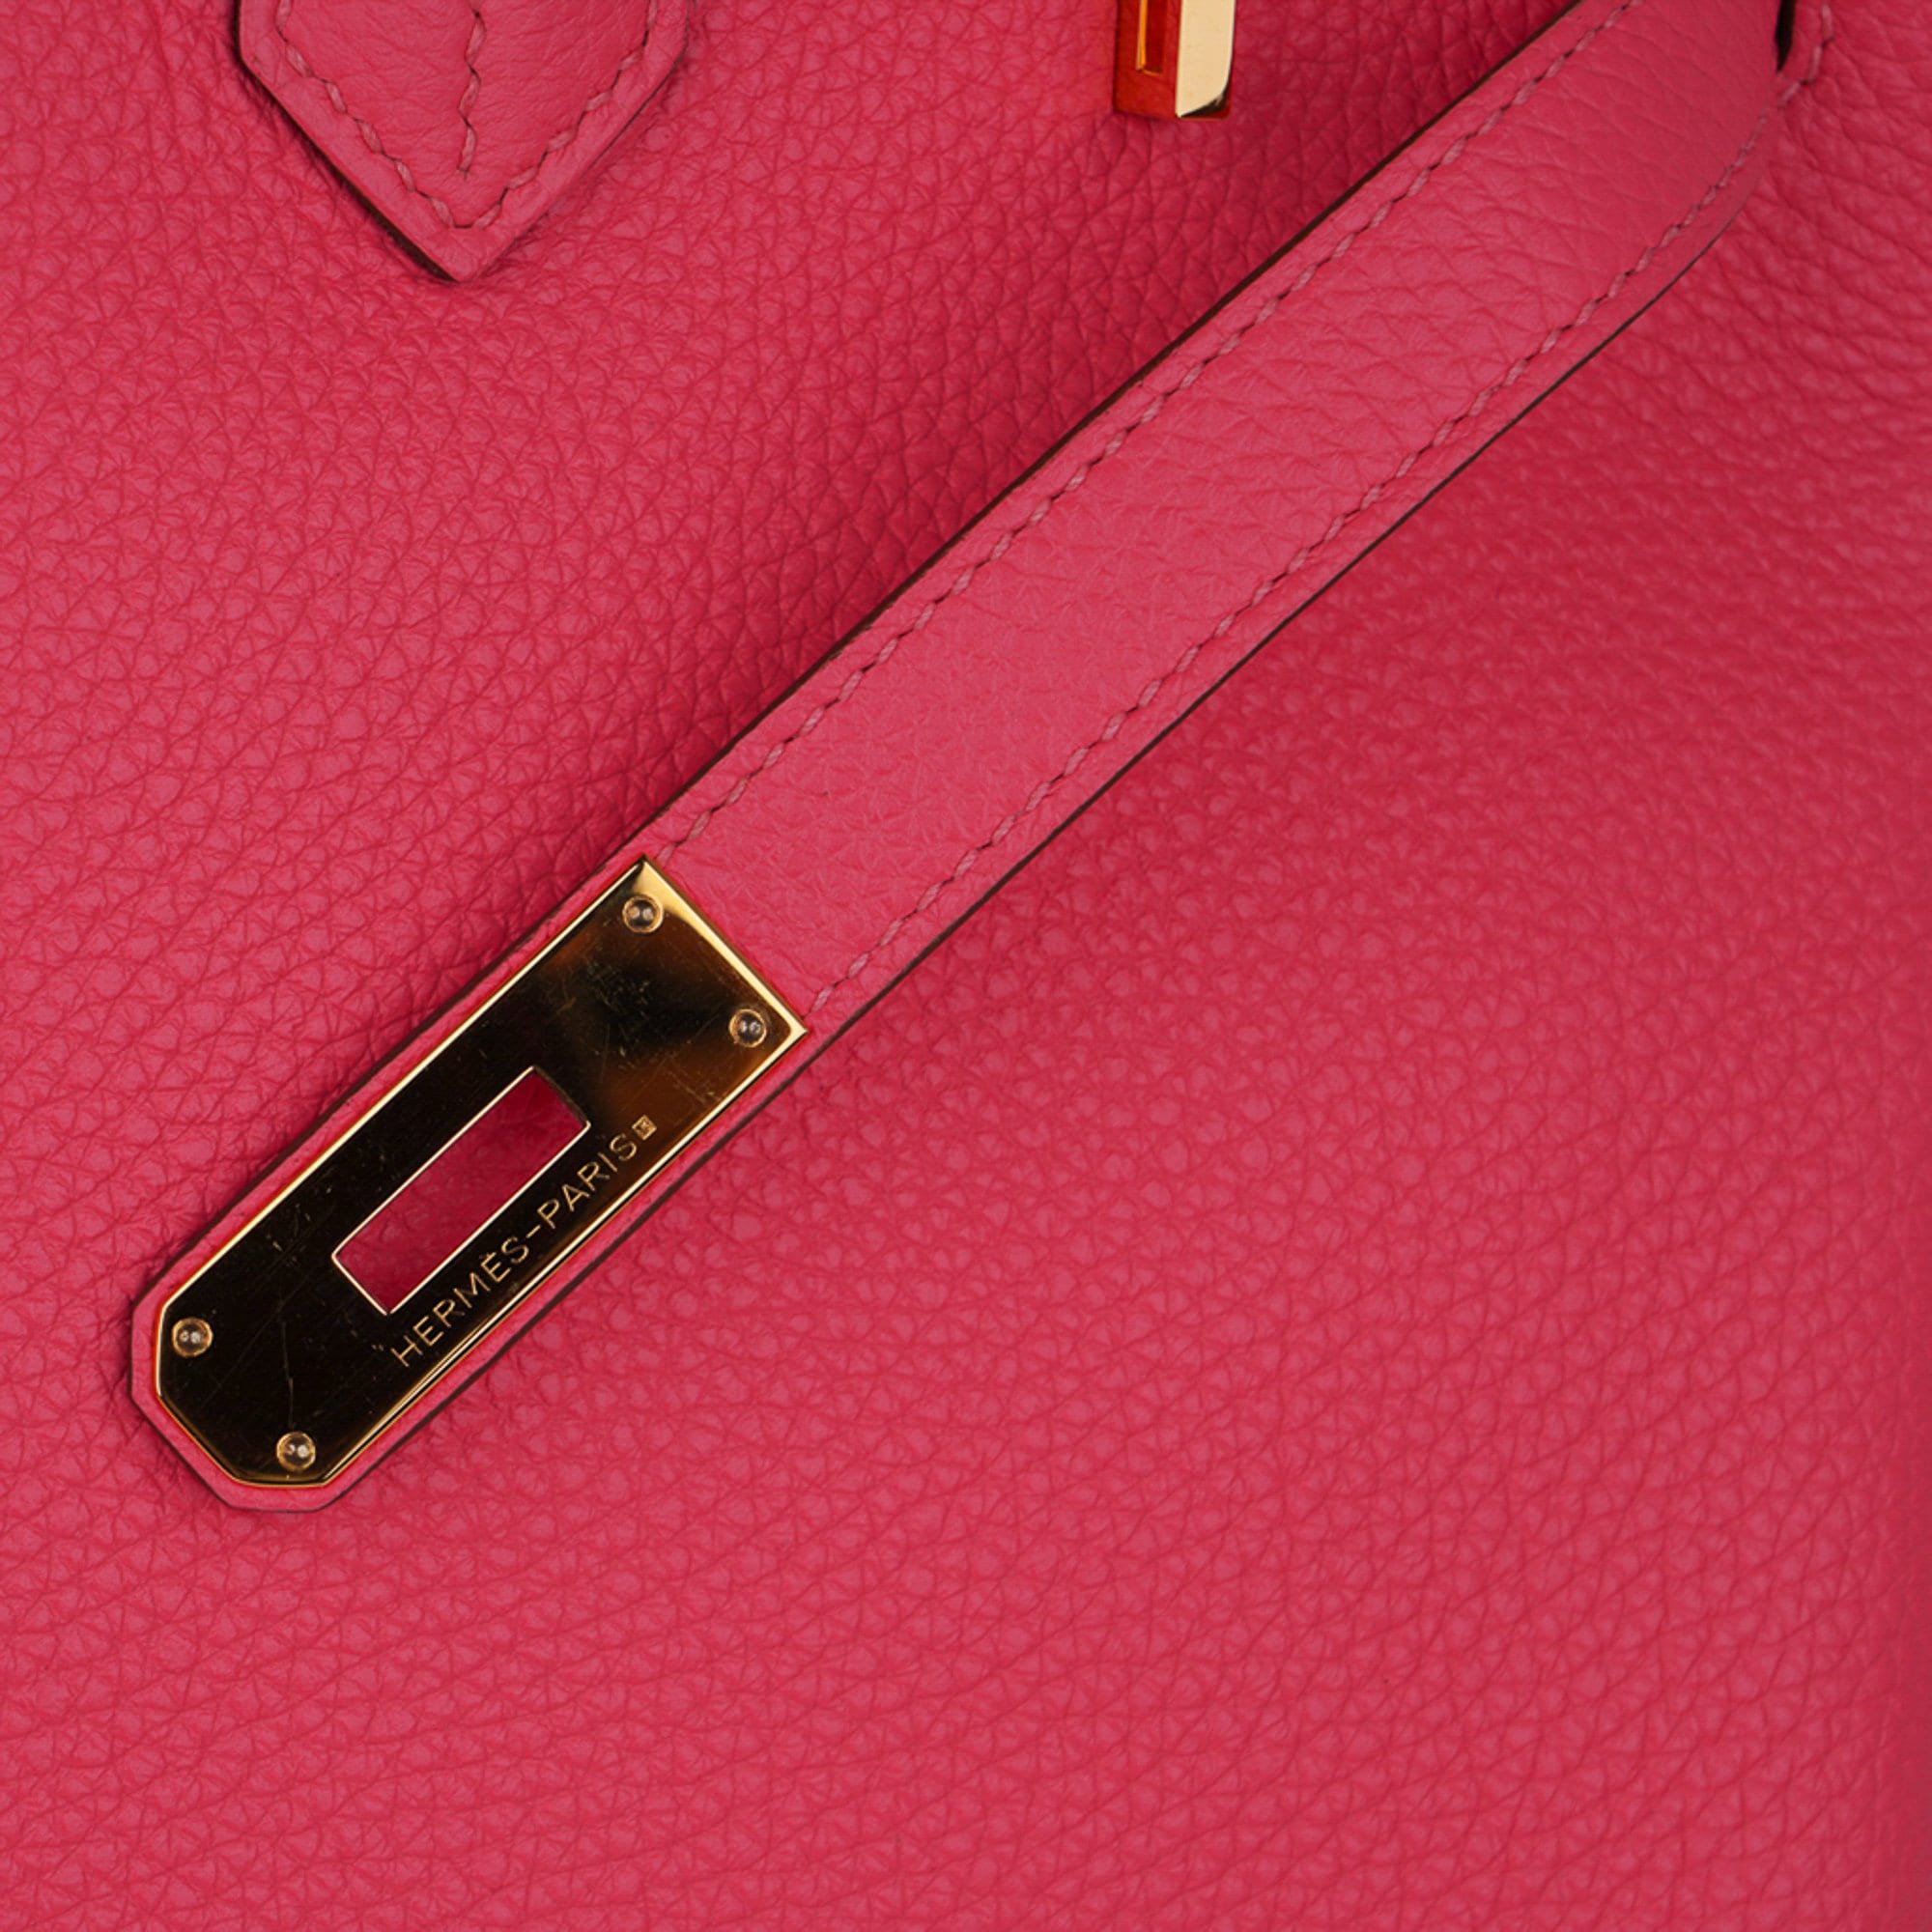 Hermes Birkin Bag Togo Leather Gold Hardware In Pink